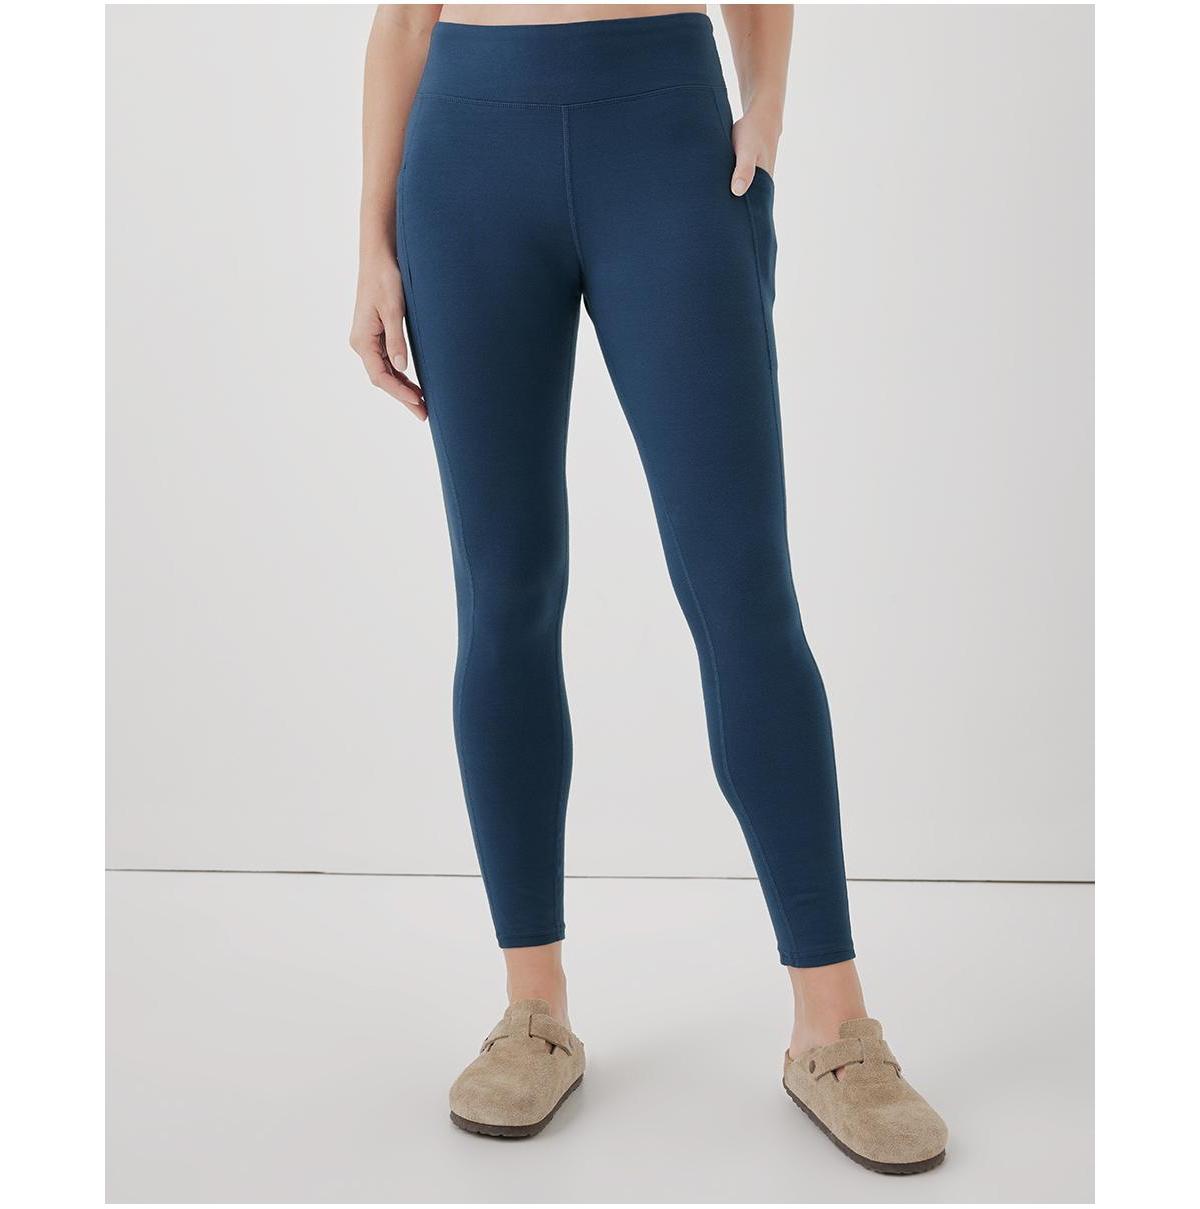 PACT Organic Cotton • Cheetah Dot Orange Polka Dot High Rise Pocket Leggings  | Pocket leggings, Organic cotton, Leggings shop